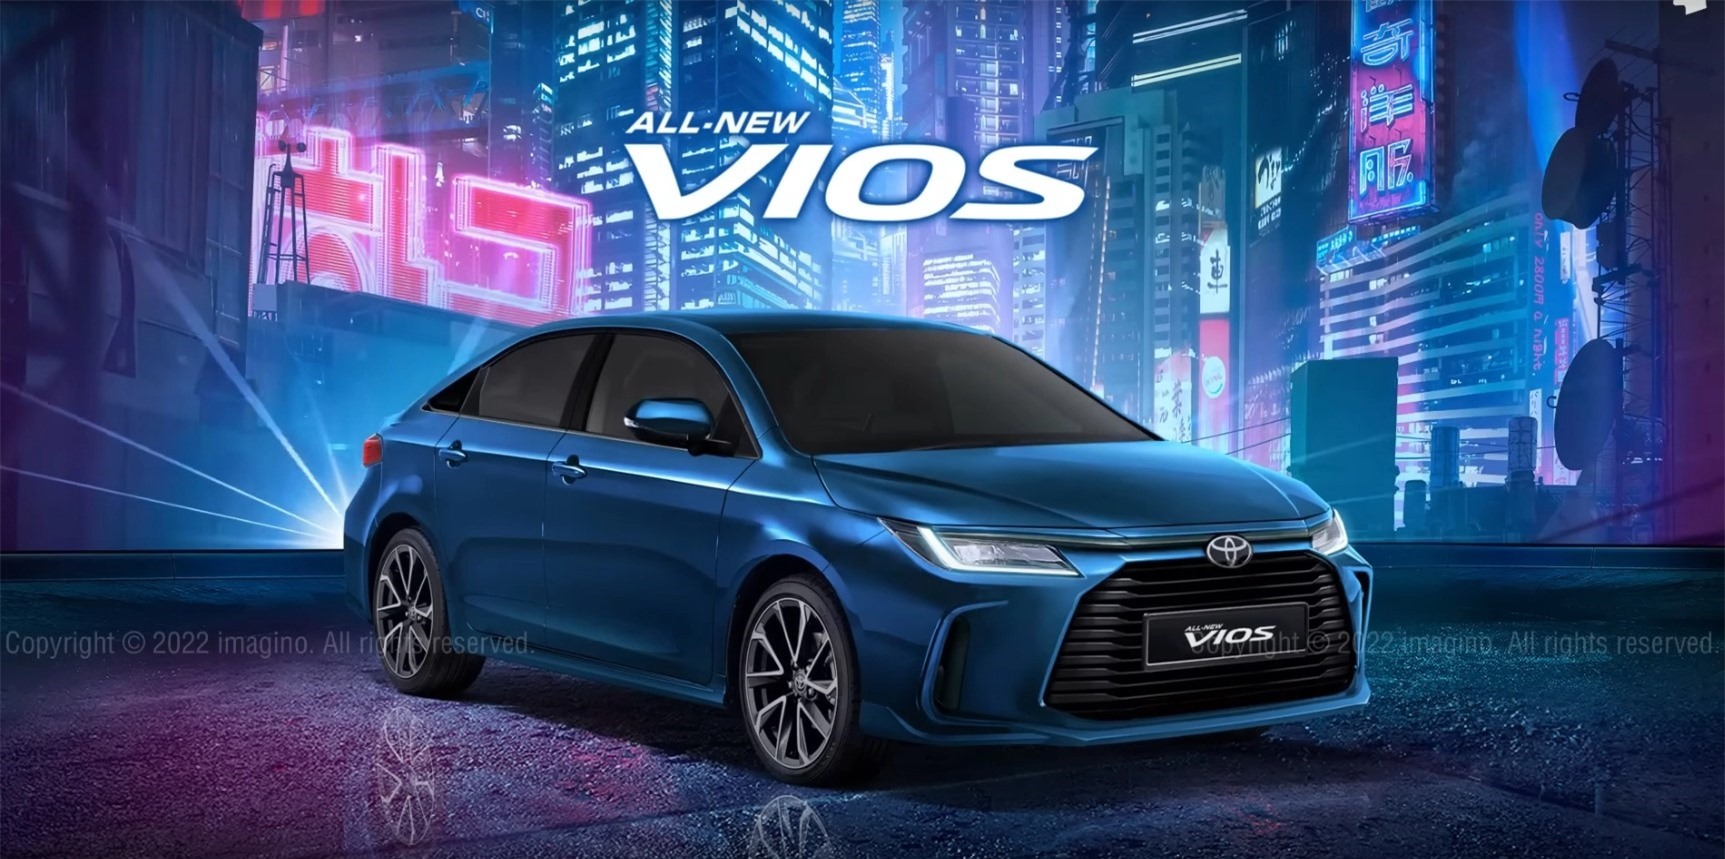 Thiết kế nhiều thay đổi của mẫu Toyota Vios 2023 thế hệ mới. Ảnh: Toyota.